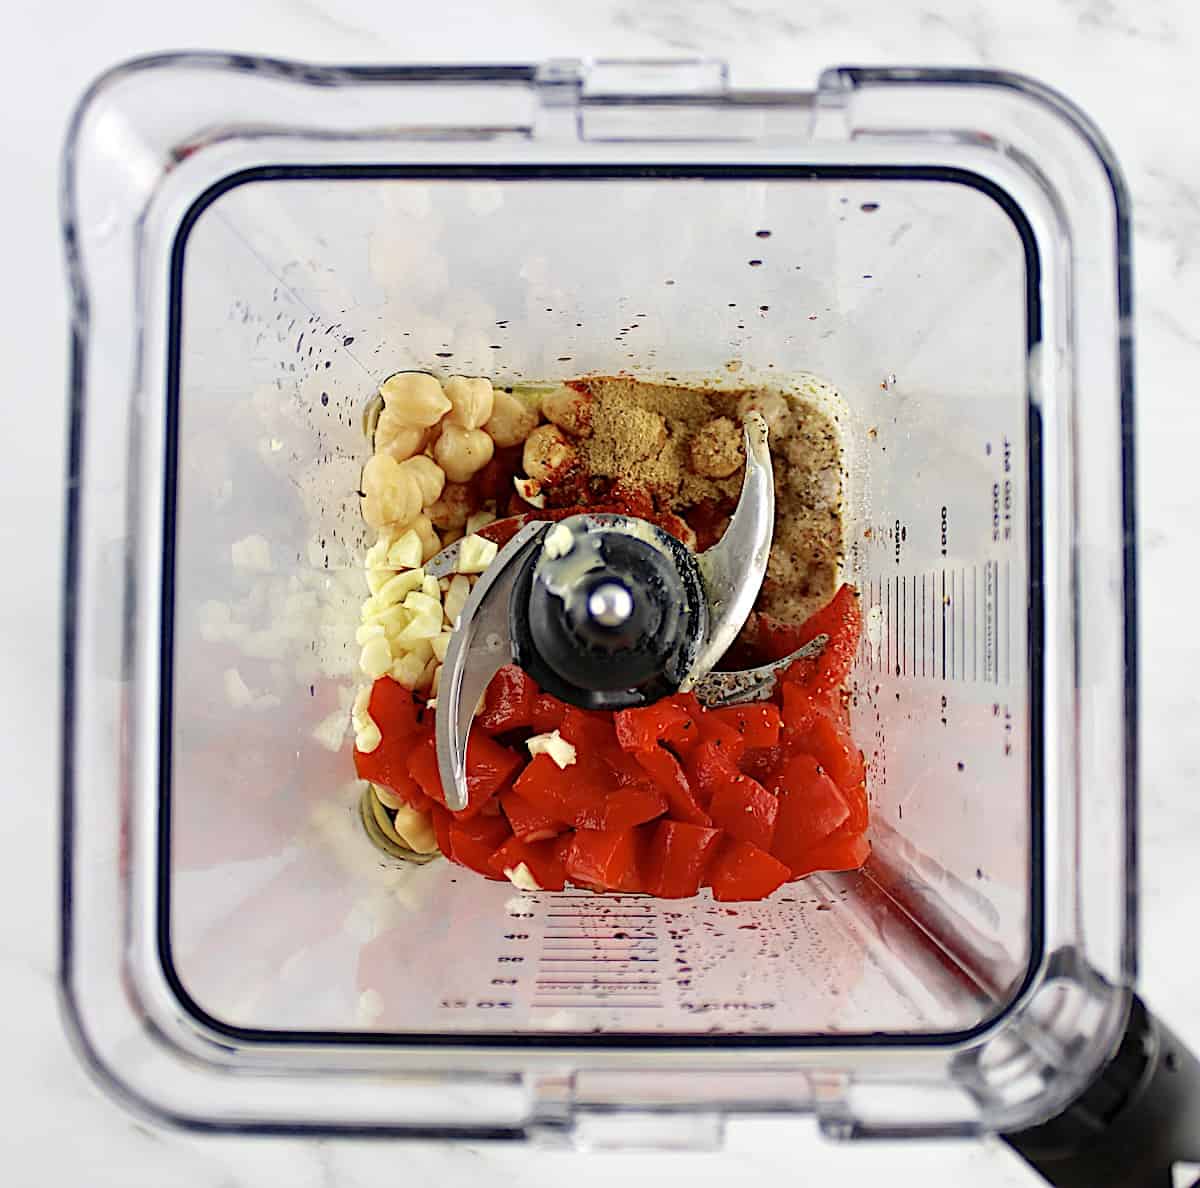 Roasted Red Pepper Hummus ingredients in blender unmixed